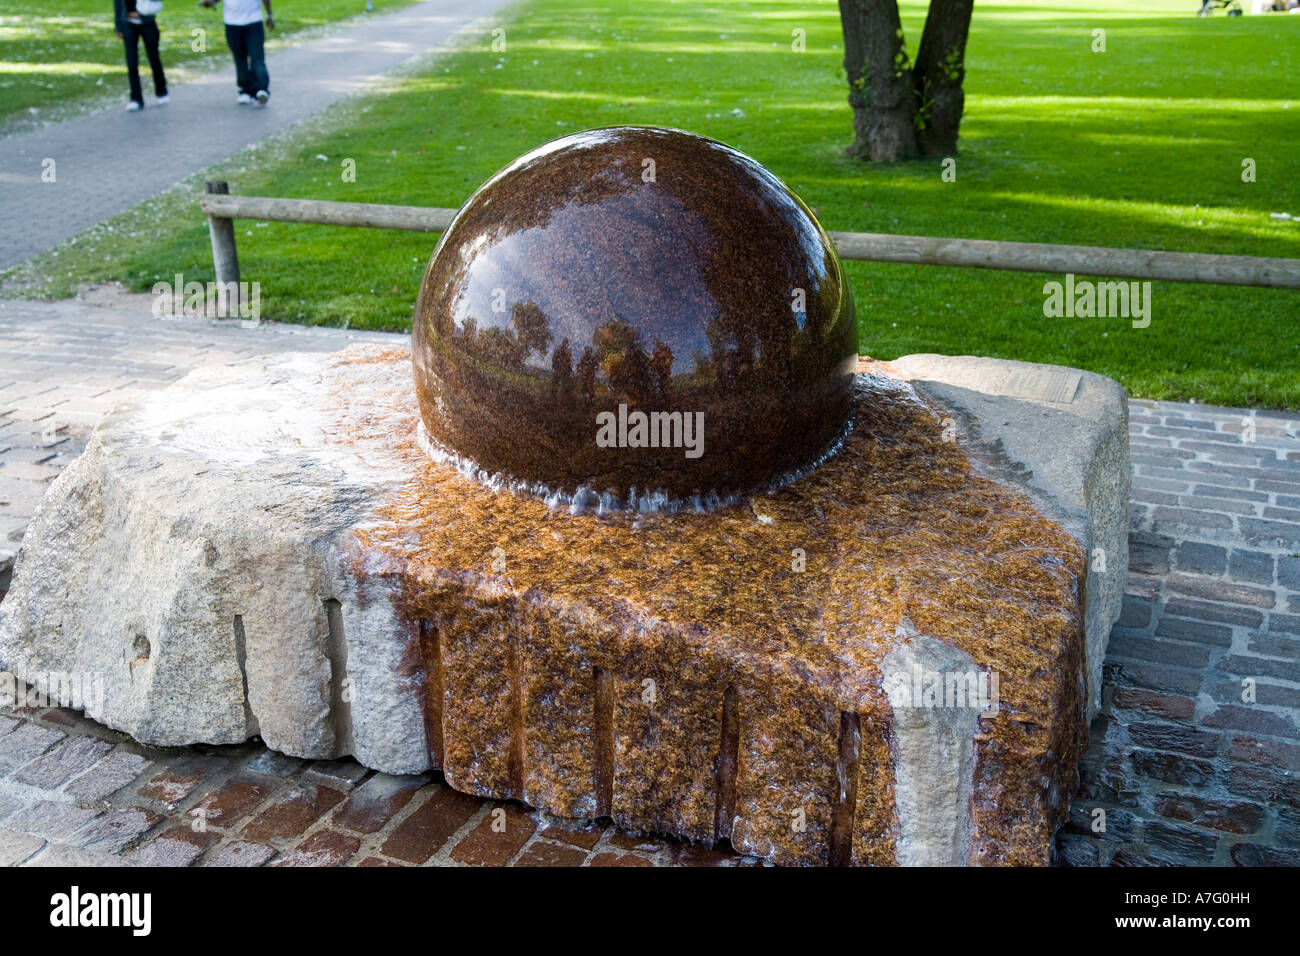 Phanomena Brunnen è una fontana in cui a due piedi di diametro sfera di pietra è sospeso su una sottile pellicola di acqua consentendo la sfera t Foto Stock